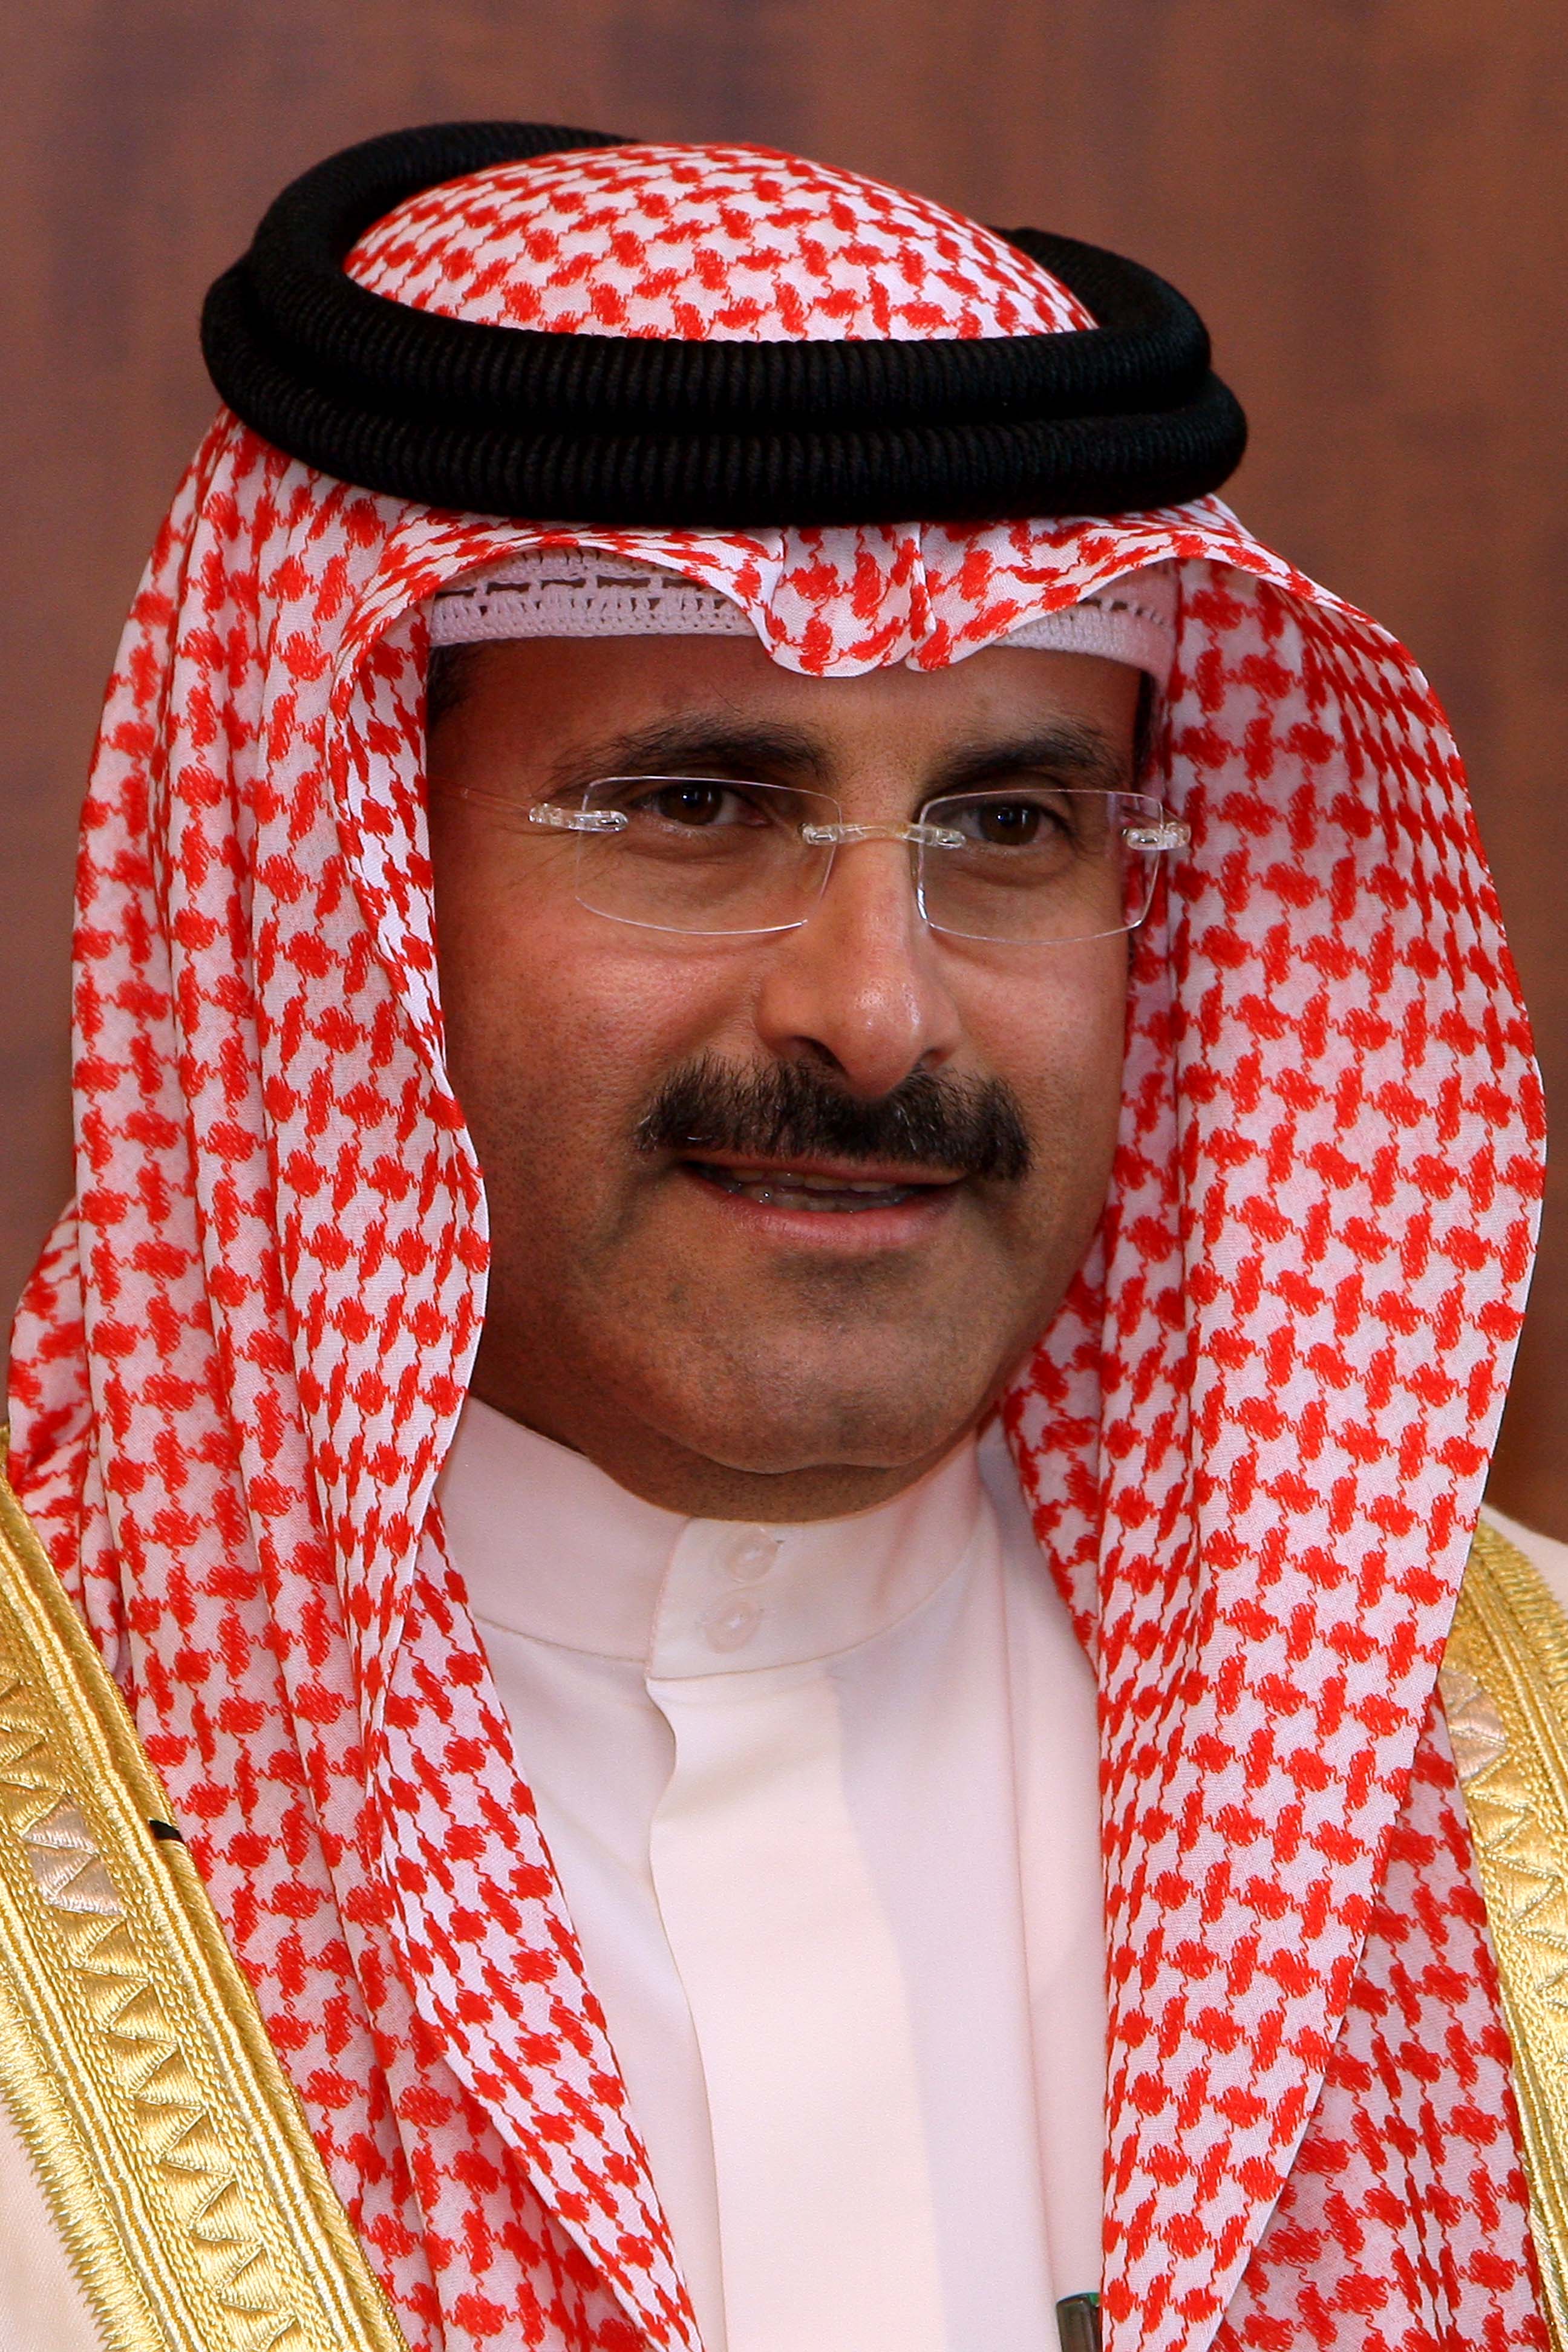 رئيس مجلس الادارة والمدير العام لوكالة الأنباء الكويتية (كونا) الشيخ مبارك الدعيج الابراهيم الصباح